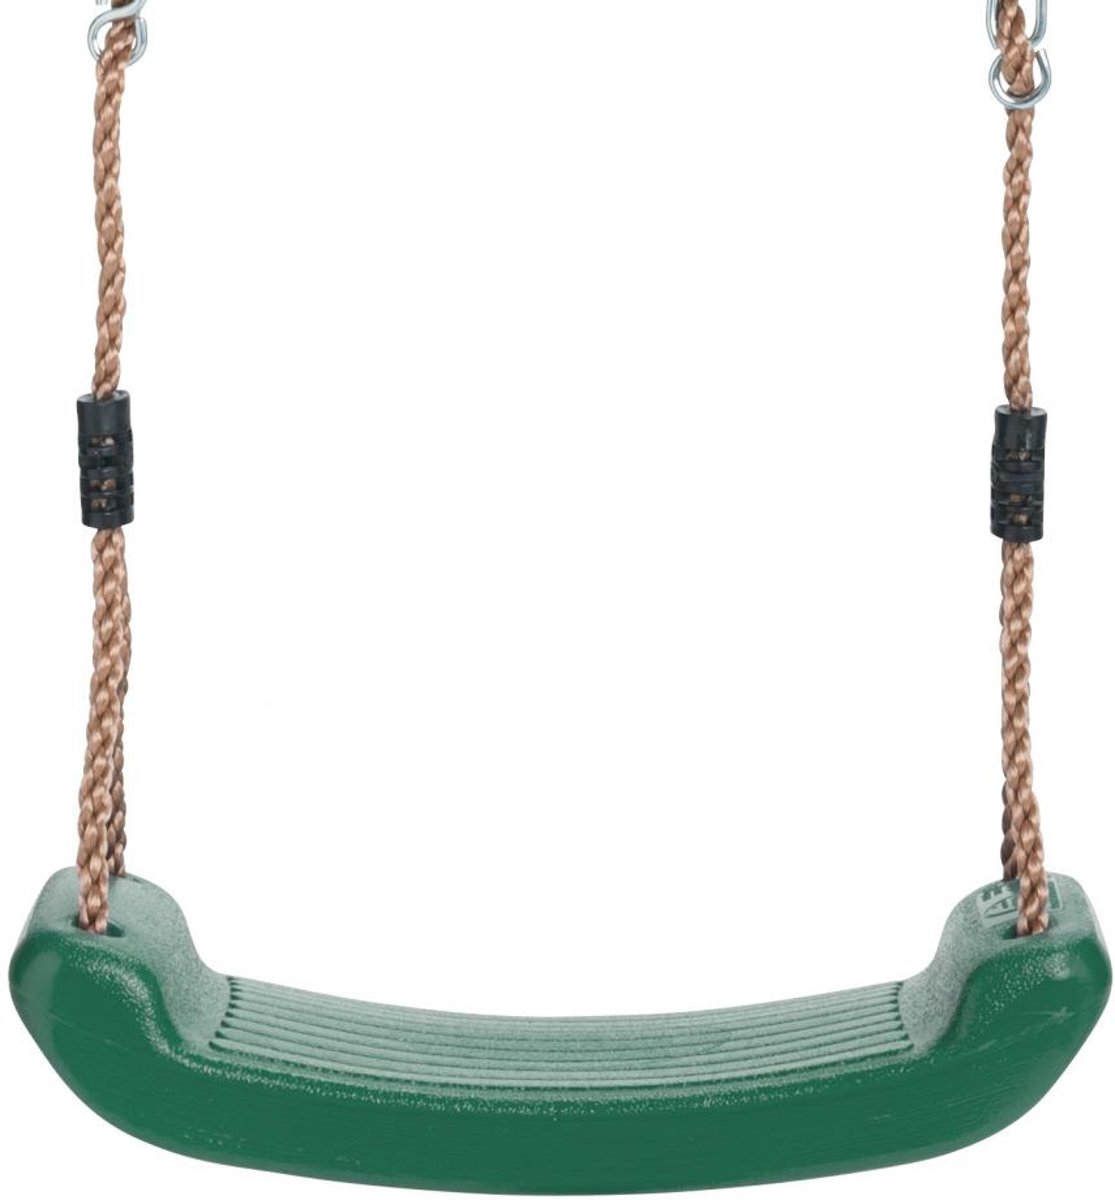 Swing King schommelzitje kunststof 43cm - groen